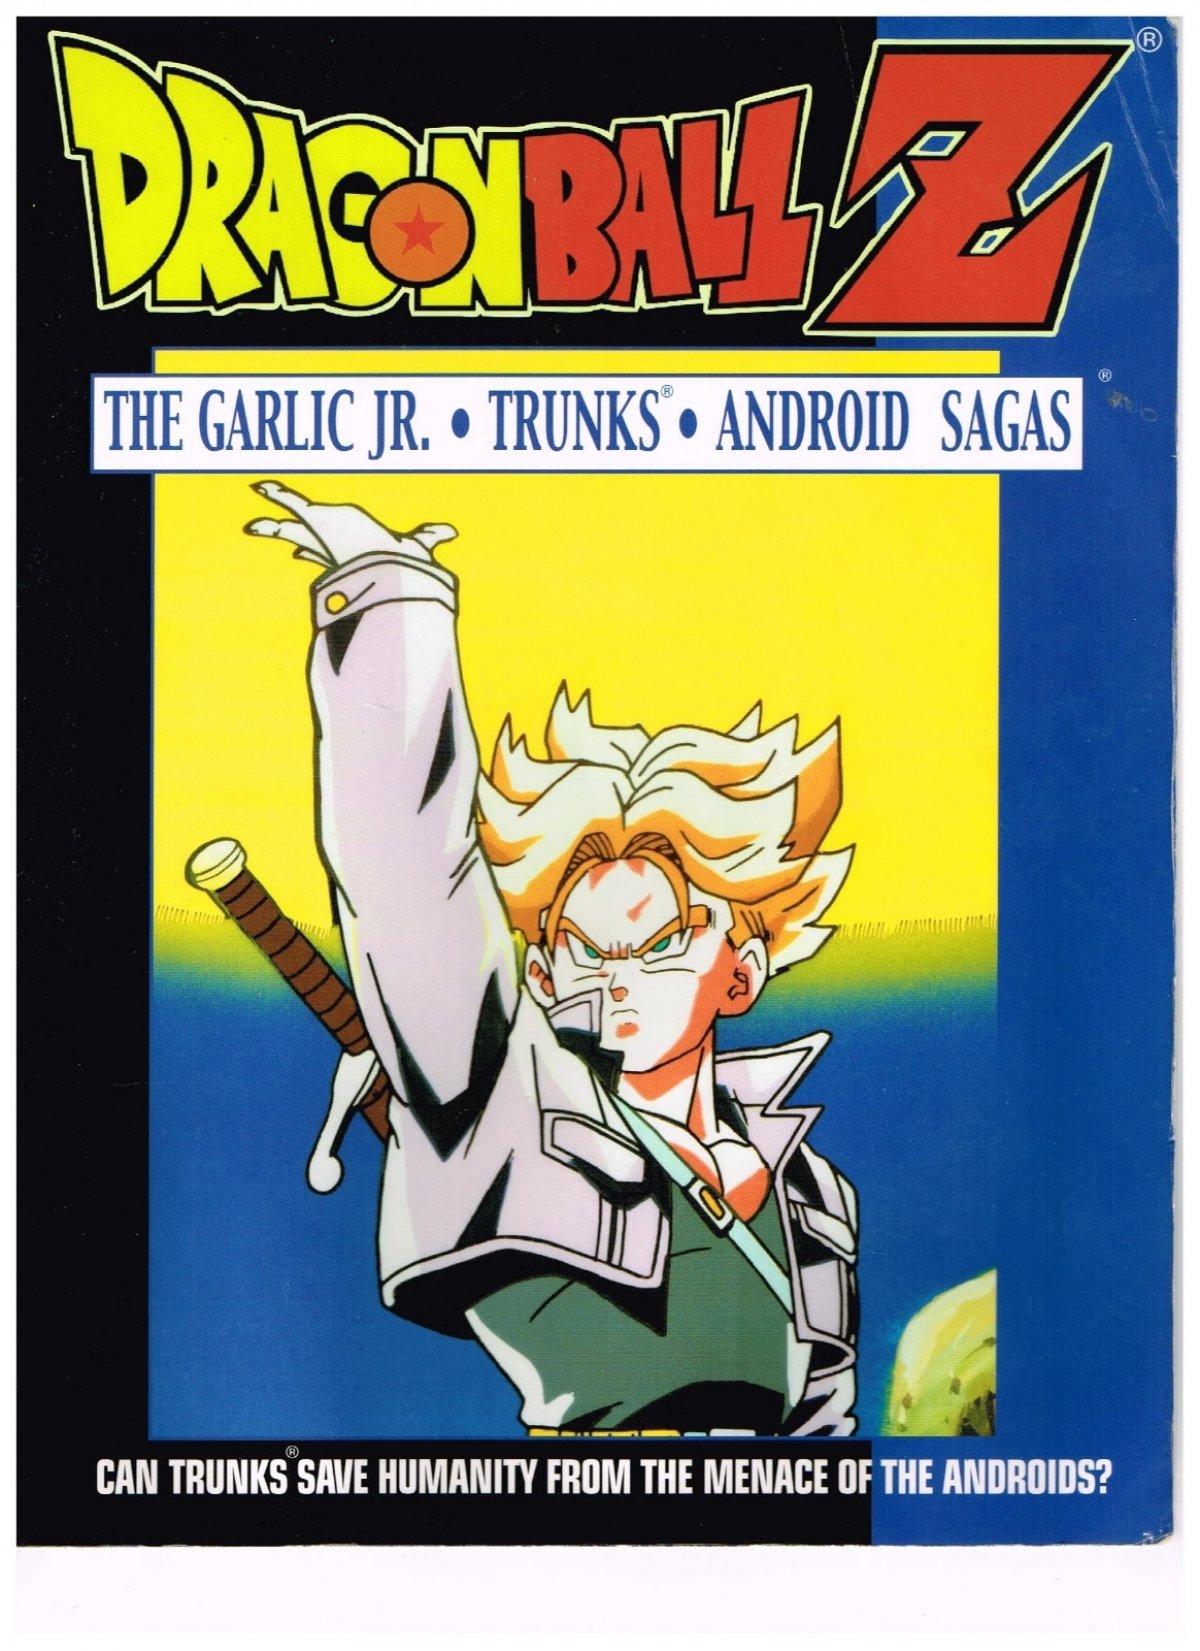 🔴Dragon ball Z: Kakarot (Full Anime Story) Part 3 Android Saga